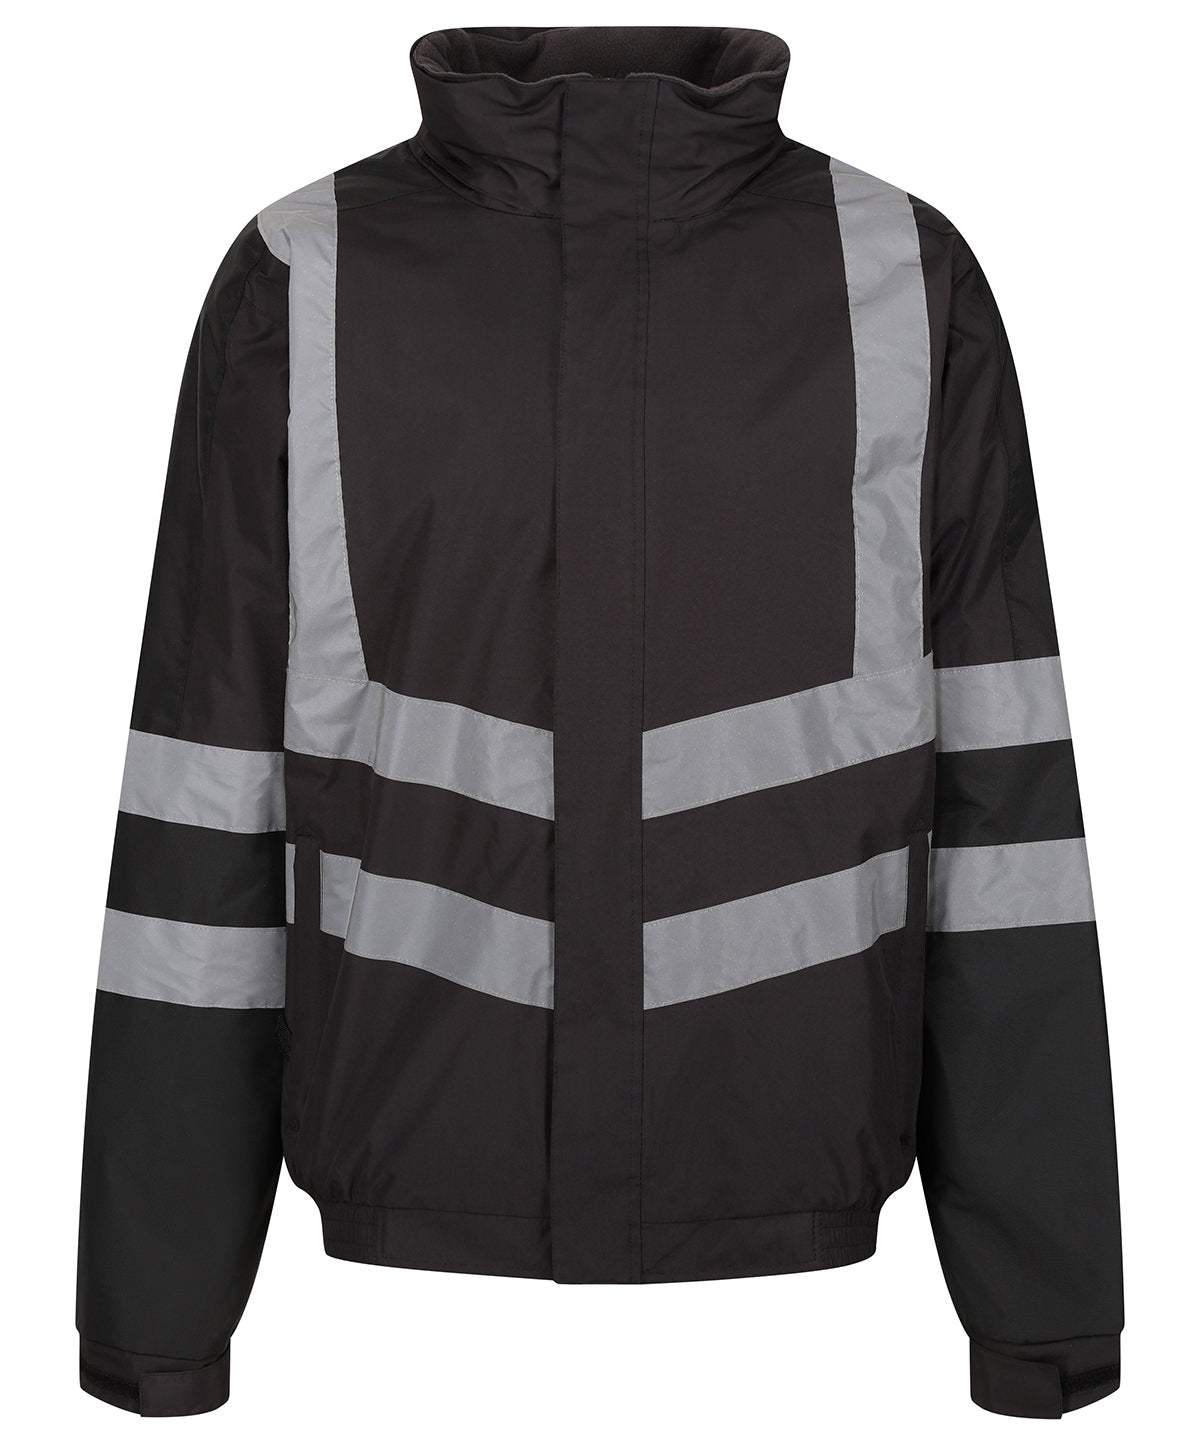 Regatta Pro Ballistic workwear waterproof jacket